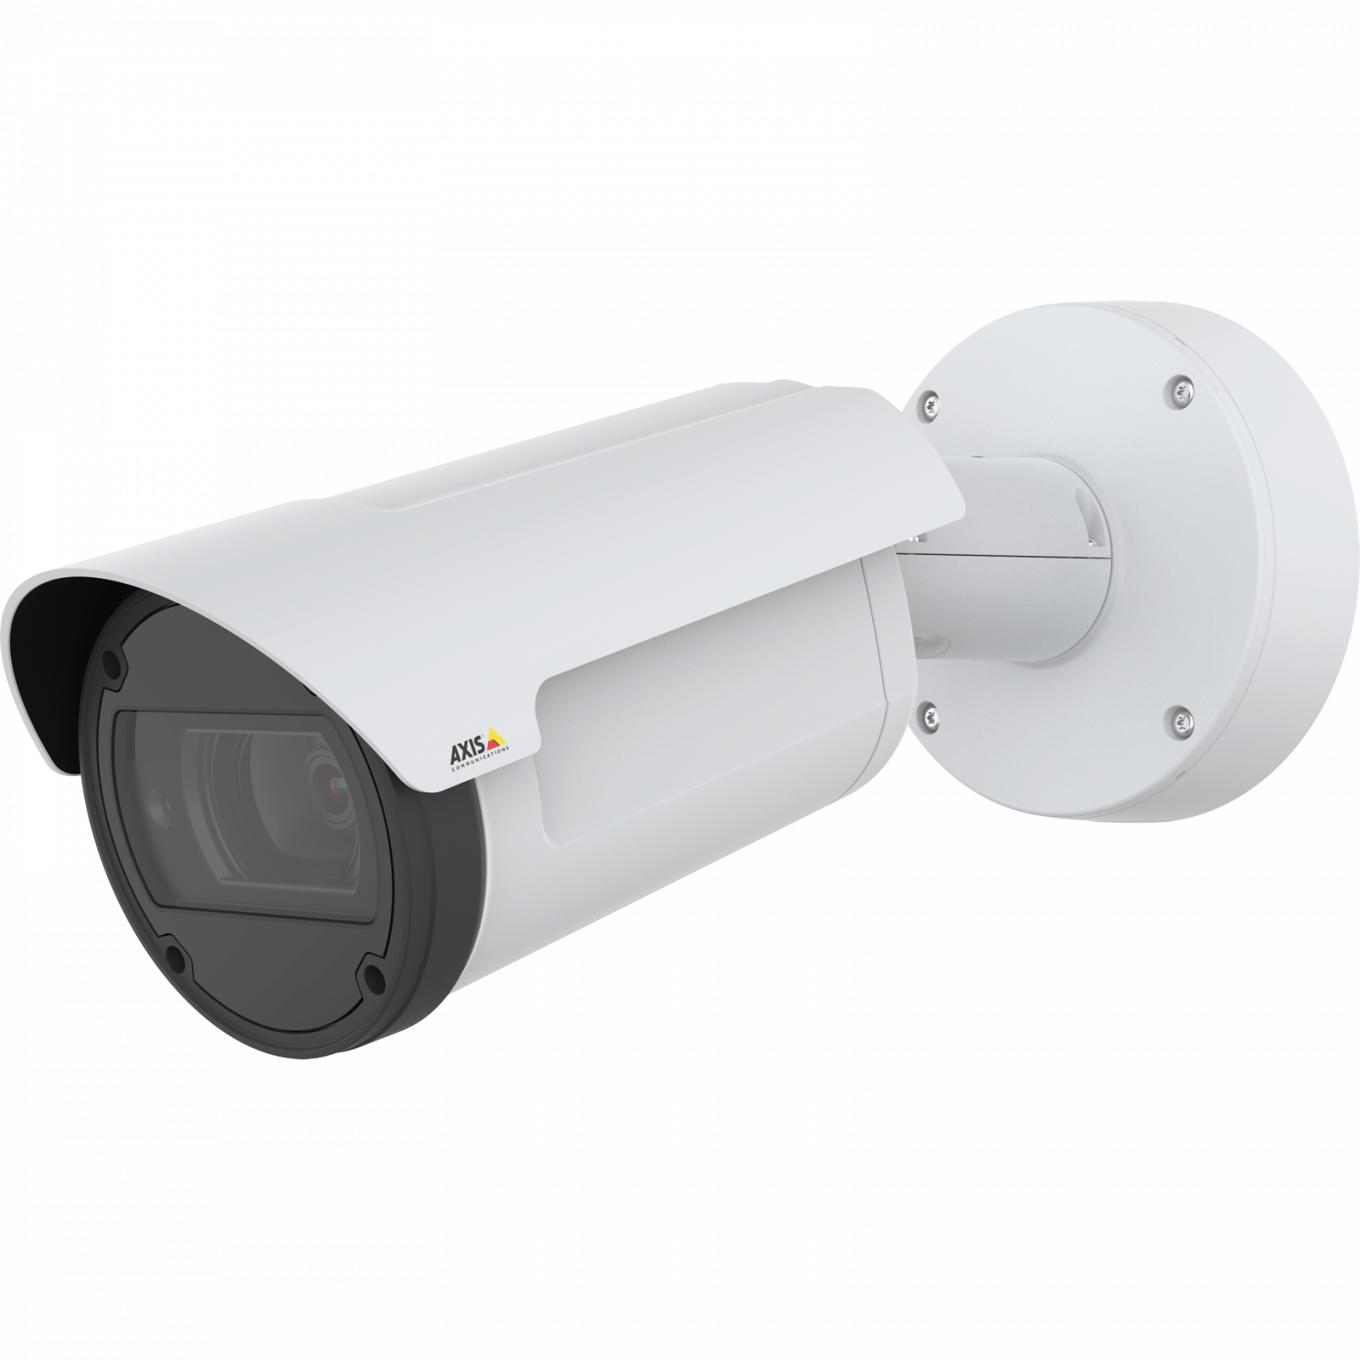 AXIS Q1798-LE IP Camera è dotata di Zipstream e Lightfinder. Il dispositivo è visualizzato dal suo angolo sinistro.